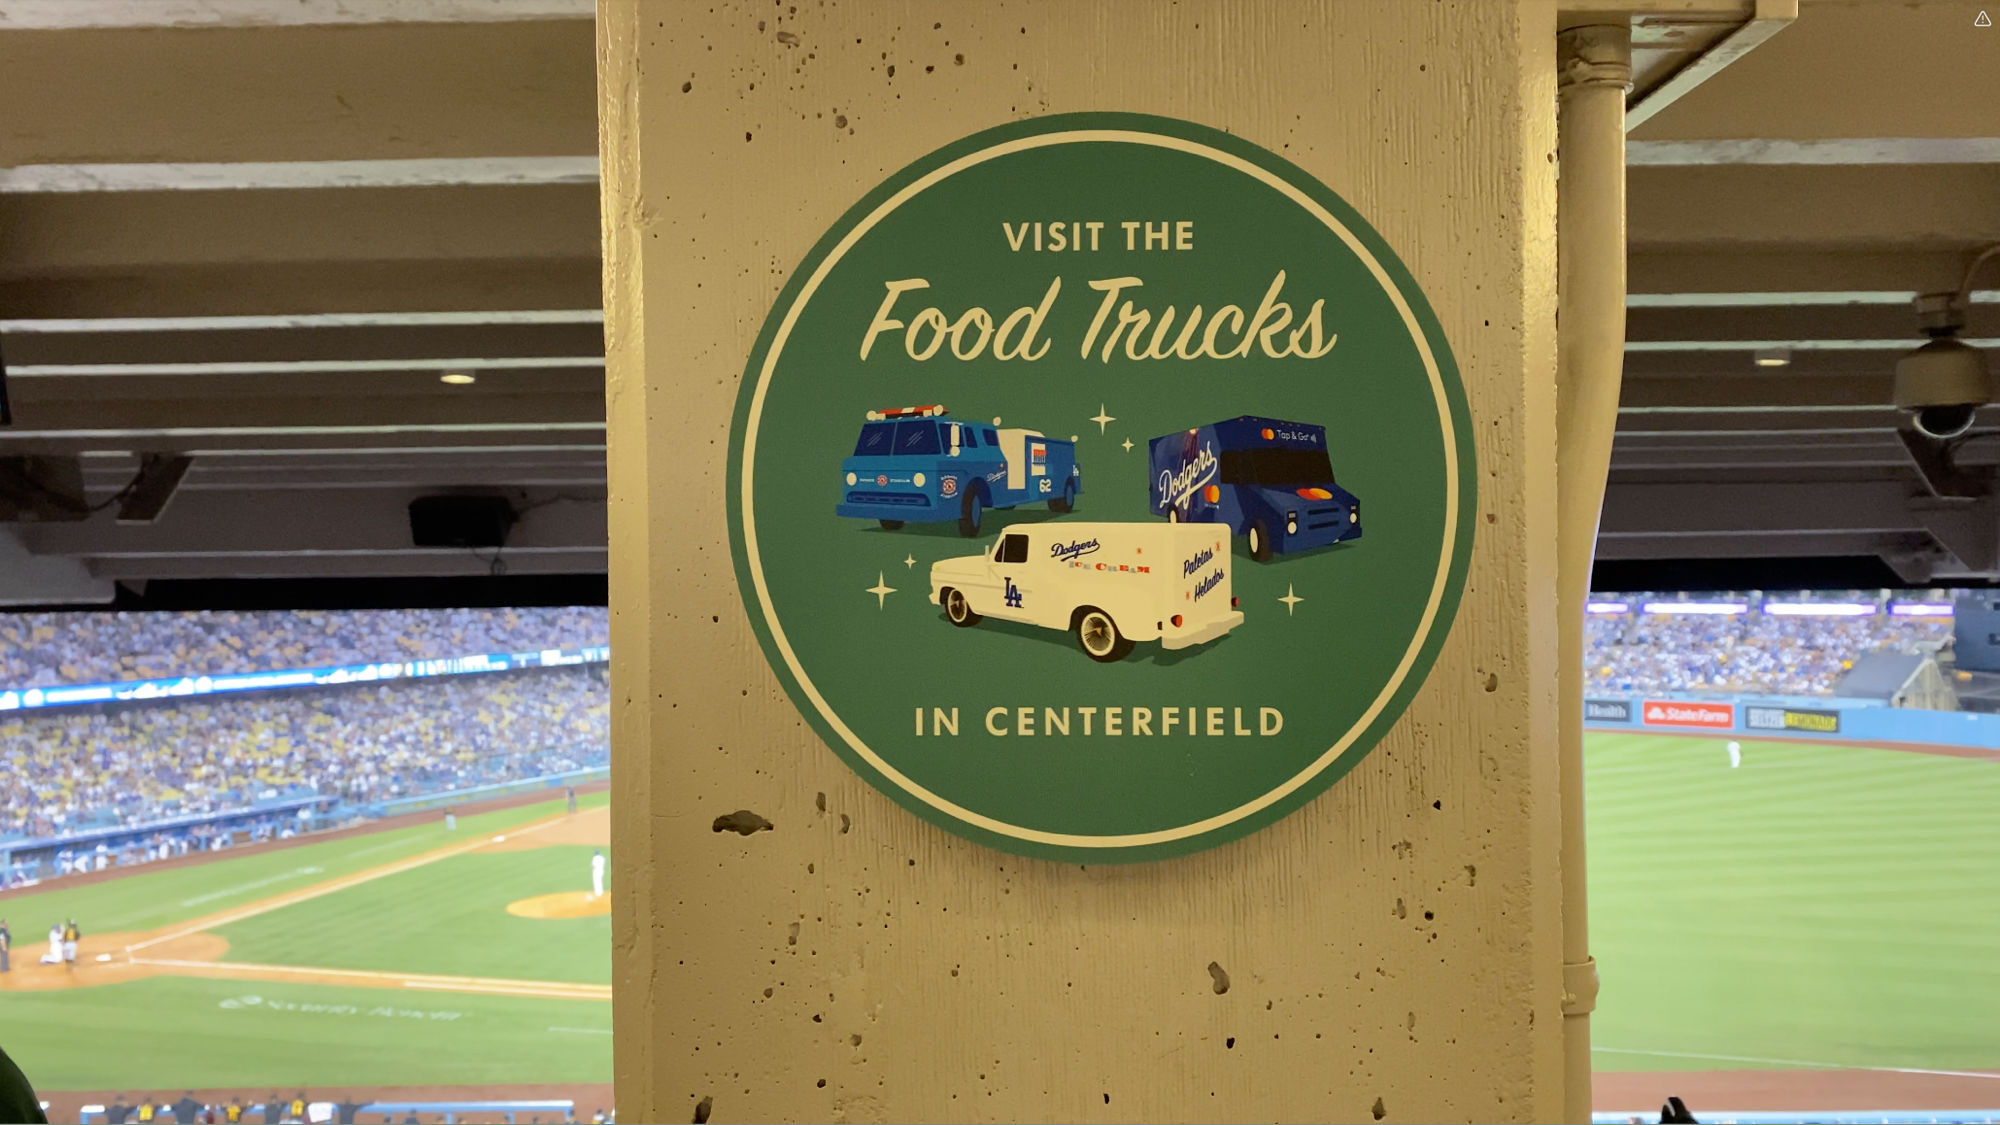 Dodger Stadium Visit the Food Trucks